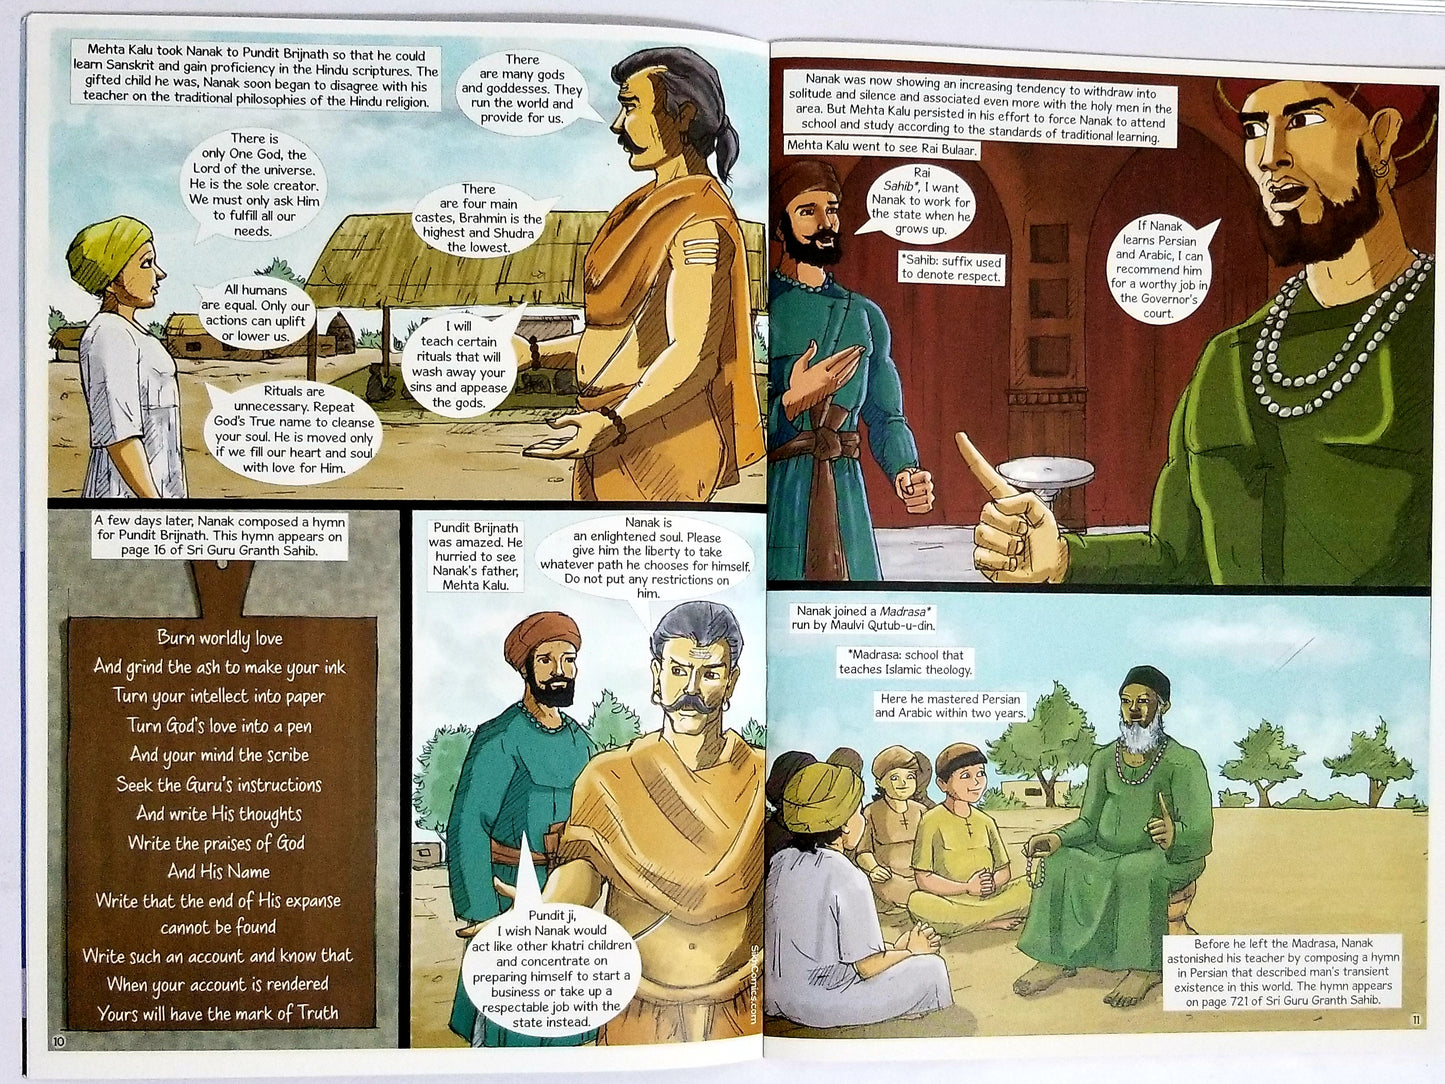 ਗੁਰੂ ਨਾਨਕ ਭਾਗ - 1 Guru Nanak Vol -1